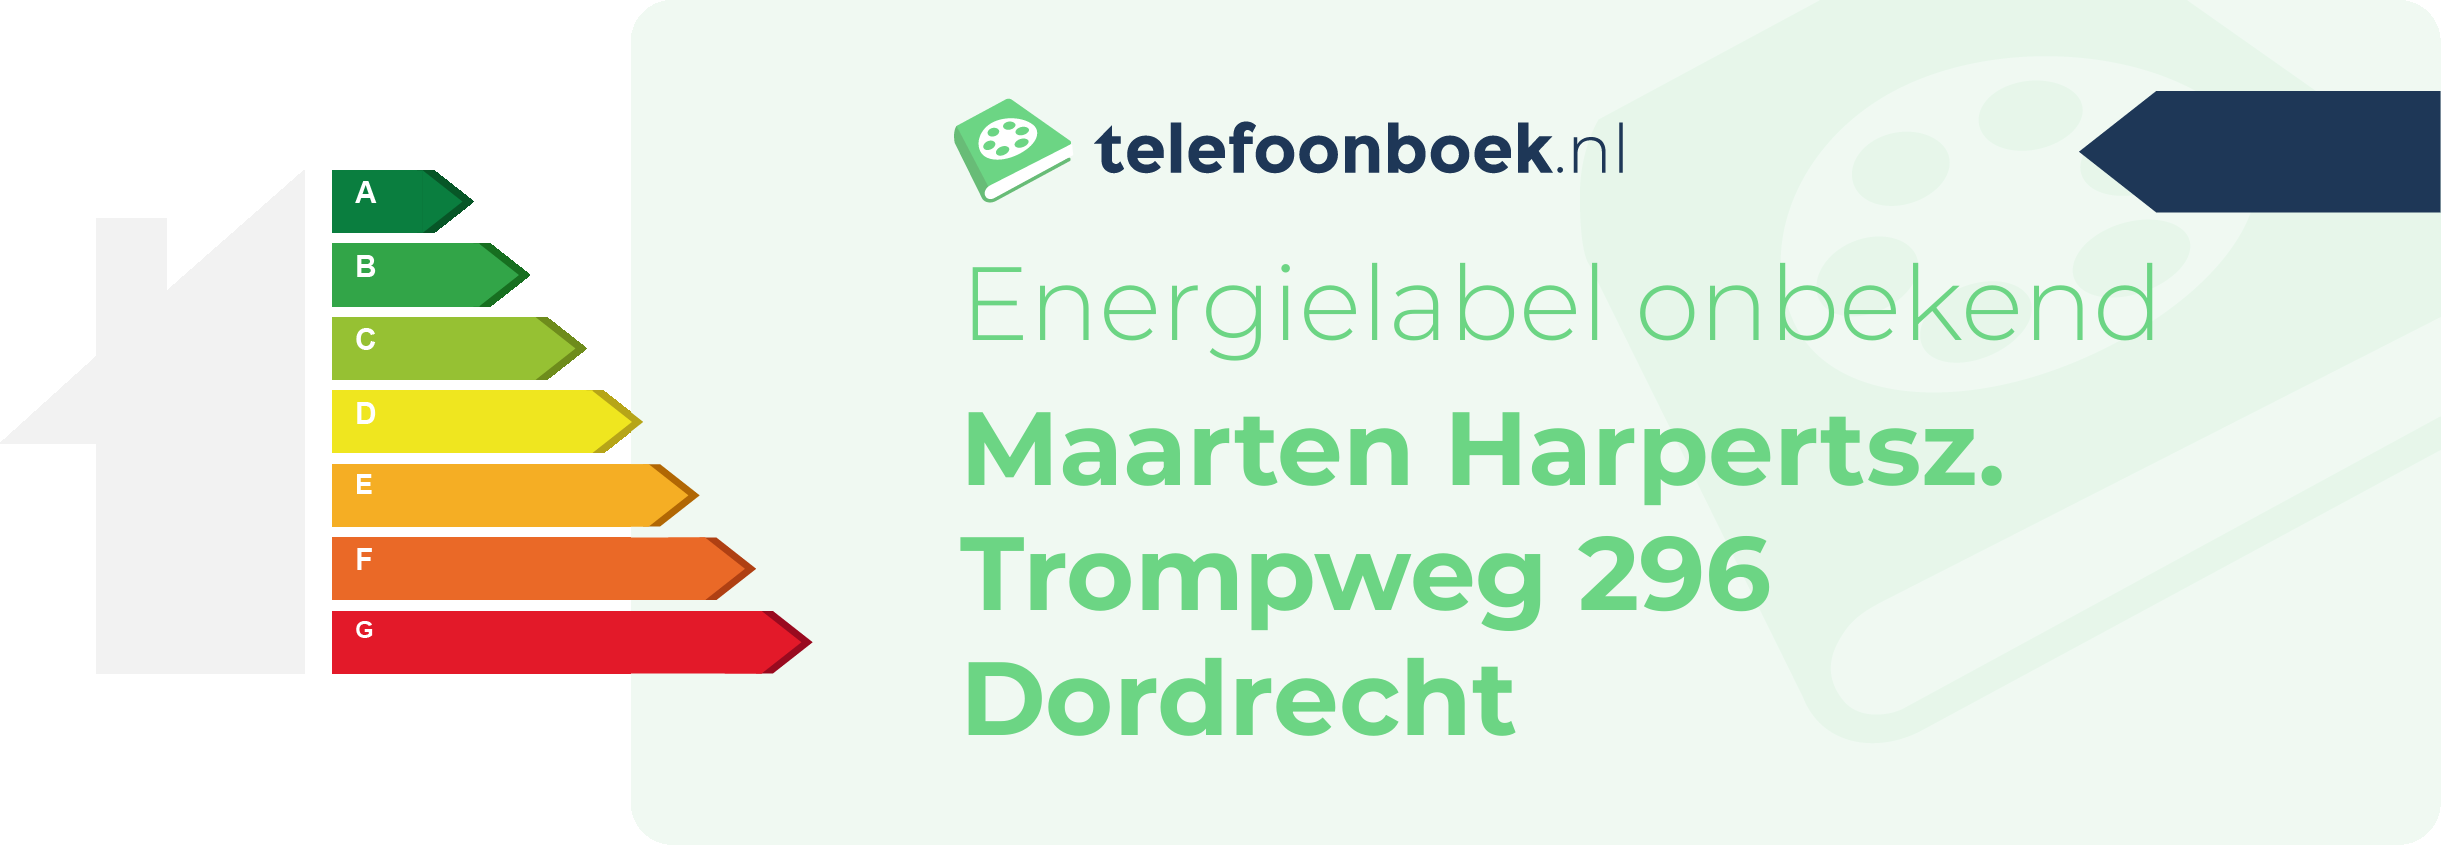 Energielabel Maarten Harpertsz. Trompweg 296 Dordrecht